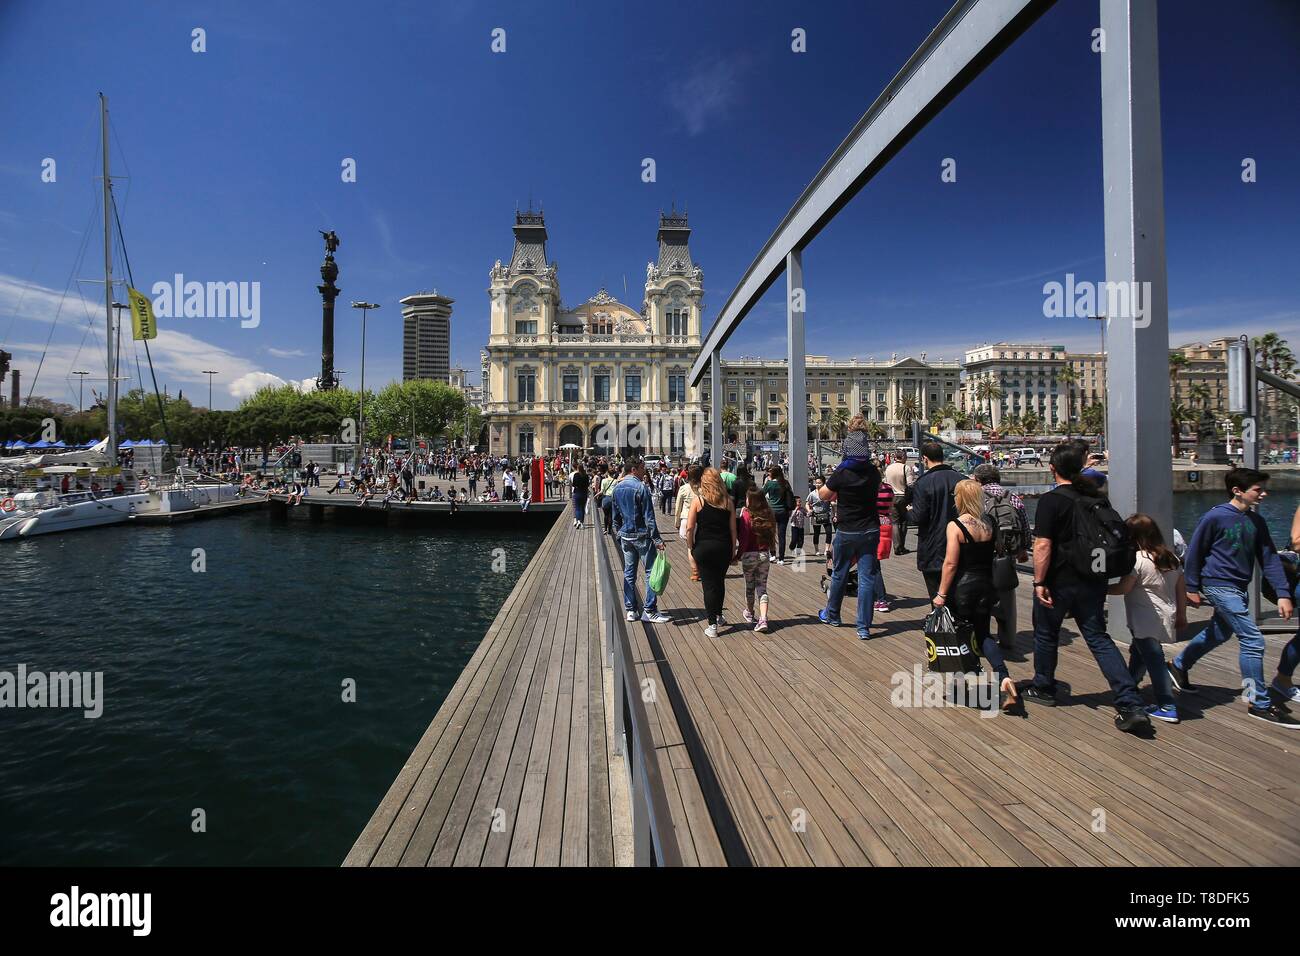 Espagne, Catalogne, Barcelone, &# x200b ;&# x200b;la Rambla del Mar passerelles, l'œuvre des architectes Helio Pi±¾n et Albert Viaplana à côté de Port Vell Banque D'Images